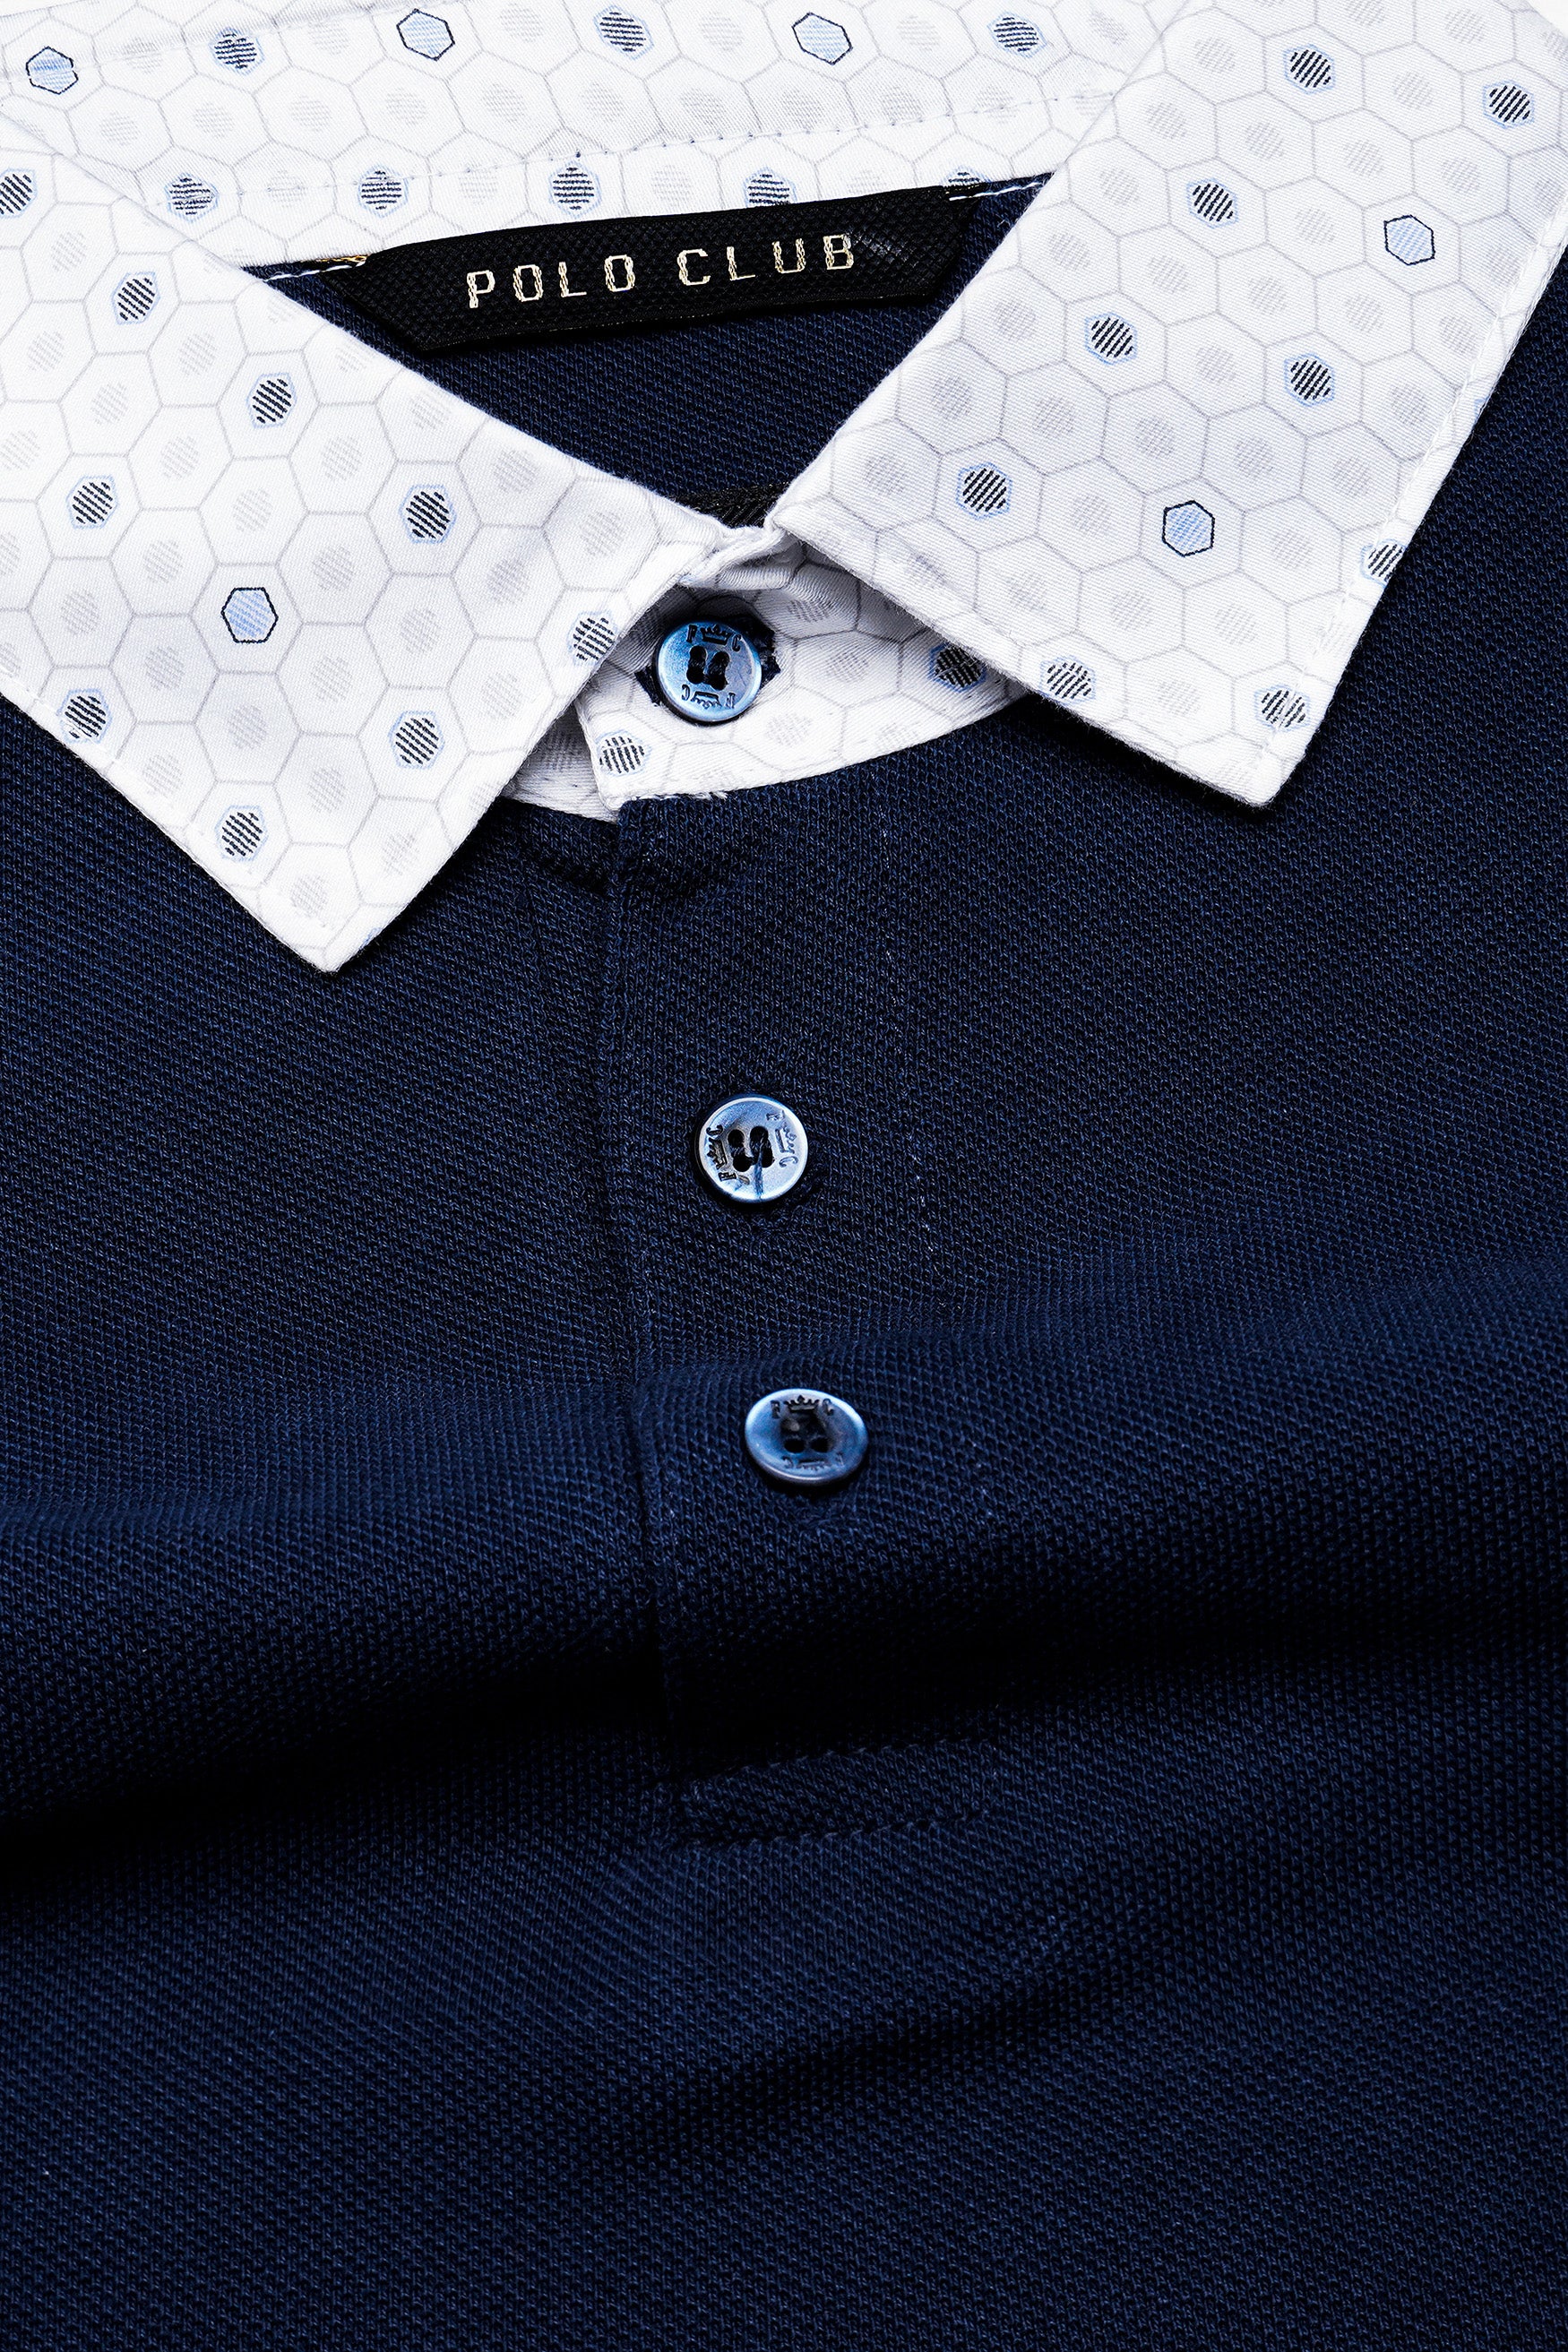 Mirage Blue Designer Premium Cotton Pique Polo